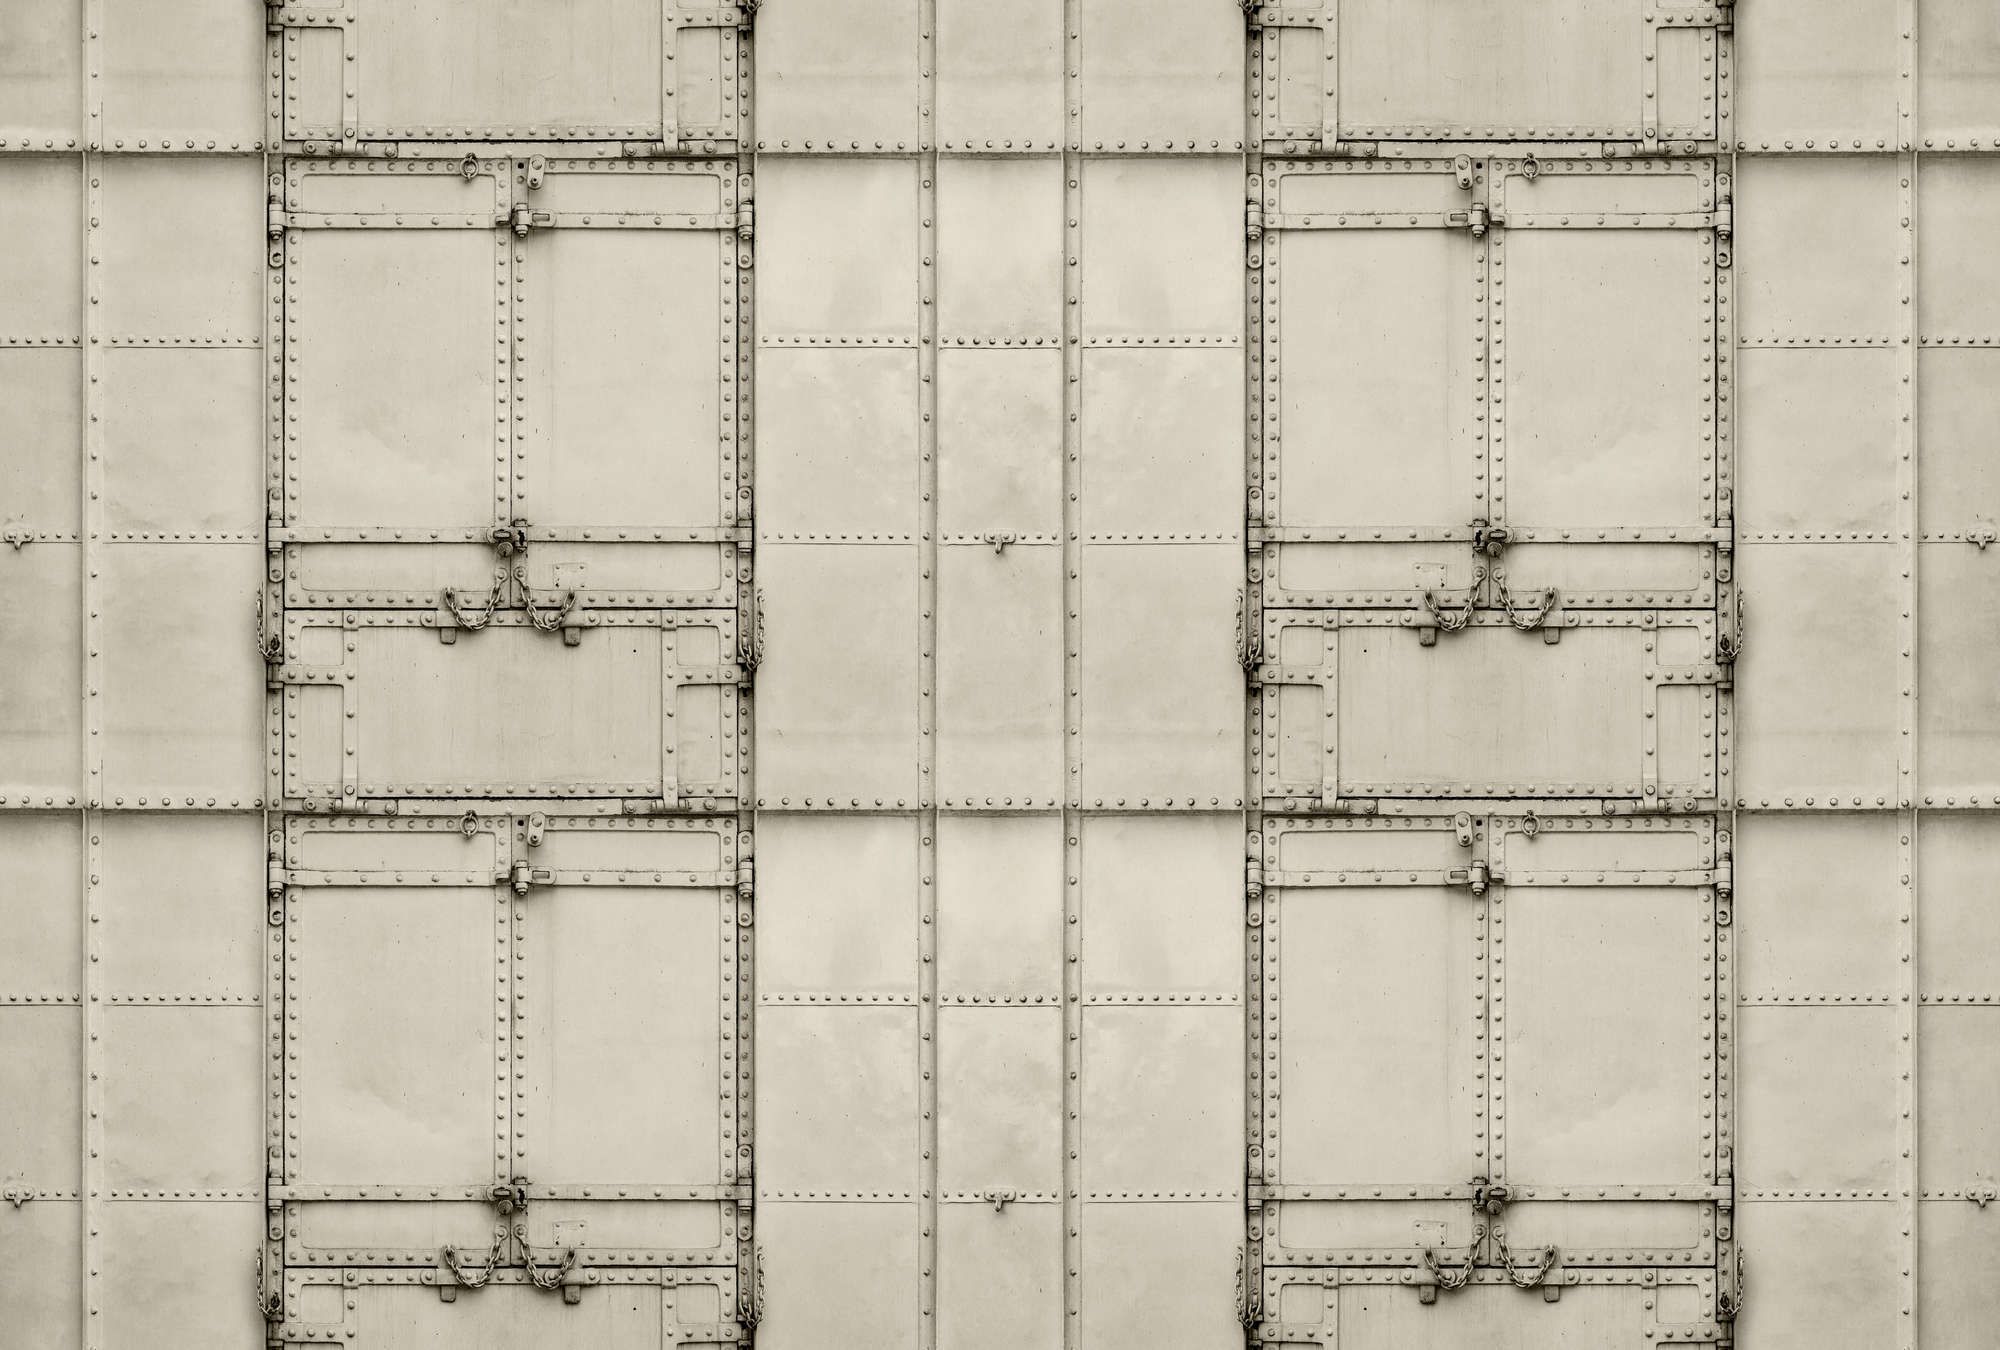             Fotomural »madurai« - Diseño patchwork con placas de metal con remaches y cadenas - Material sin tejer liso, ligeramente nacarado
        